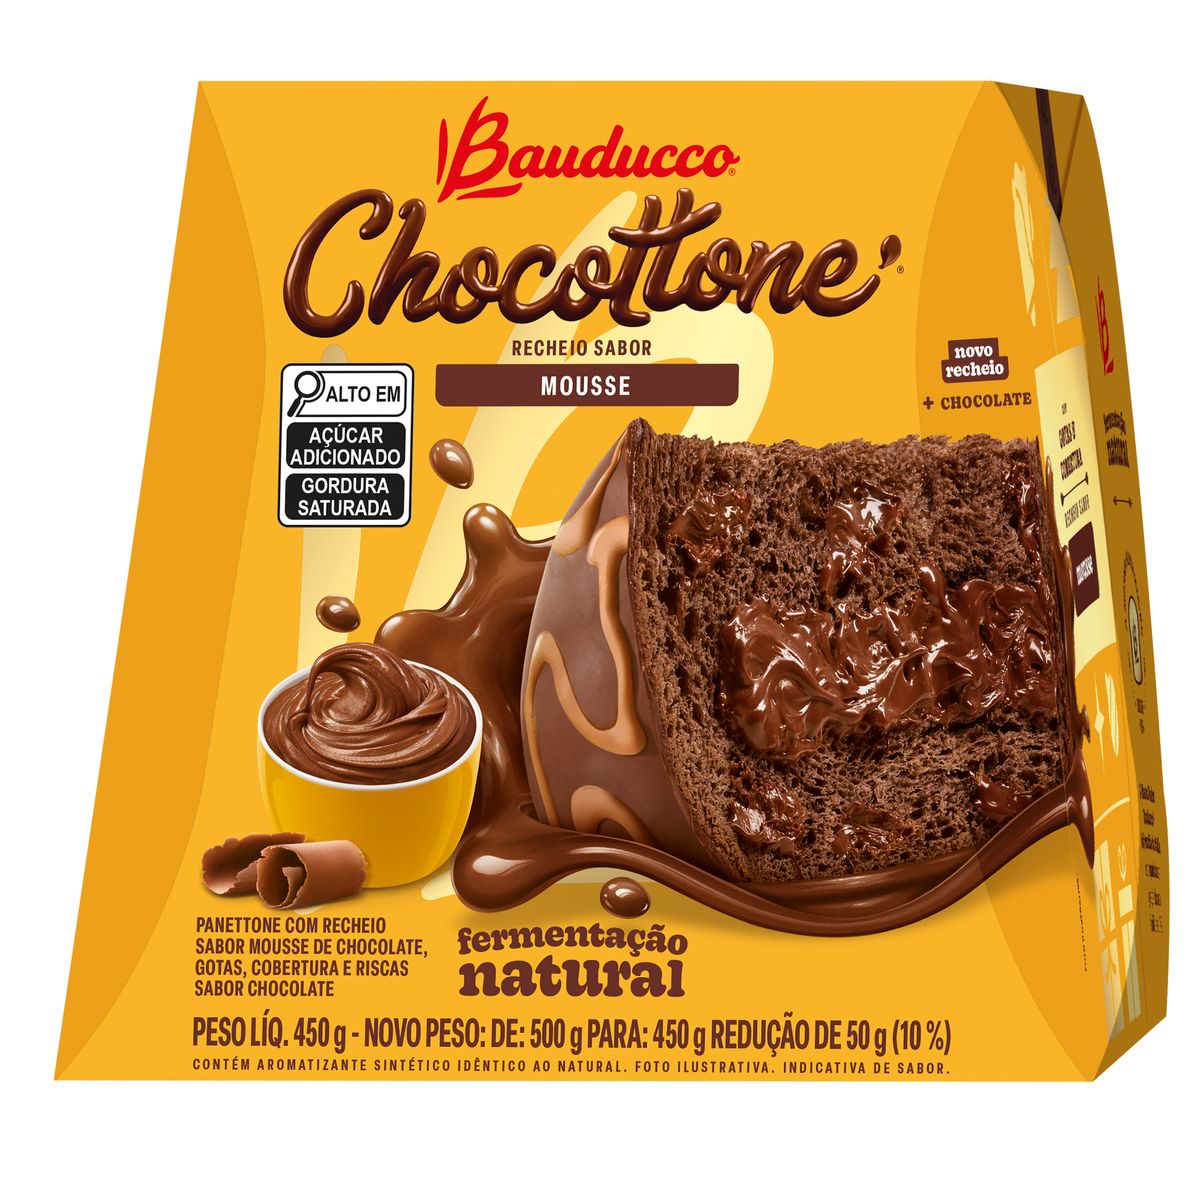 Chocottone Bauducco Chocolate Recheio de Mousse 450g